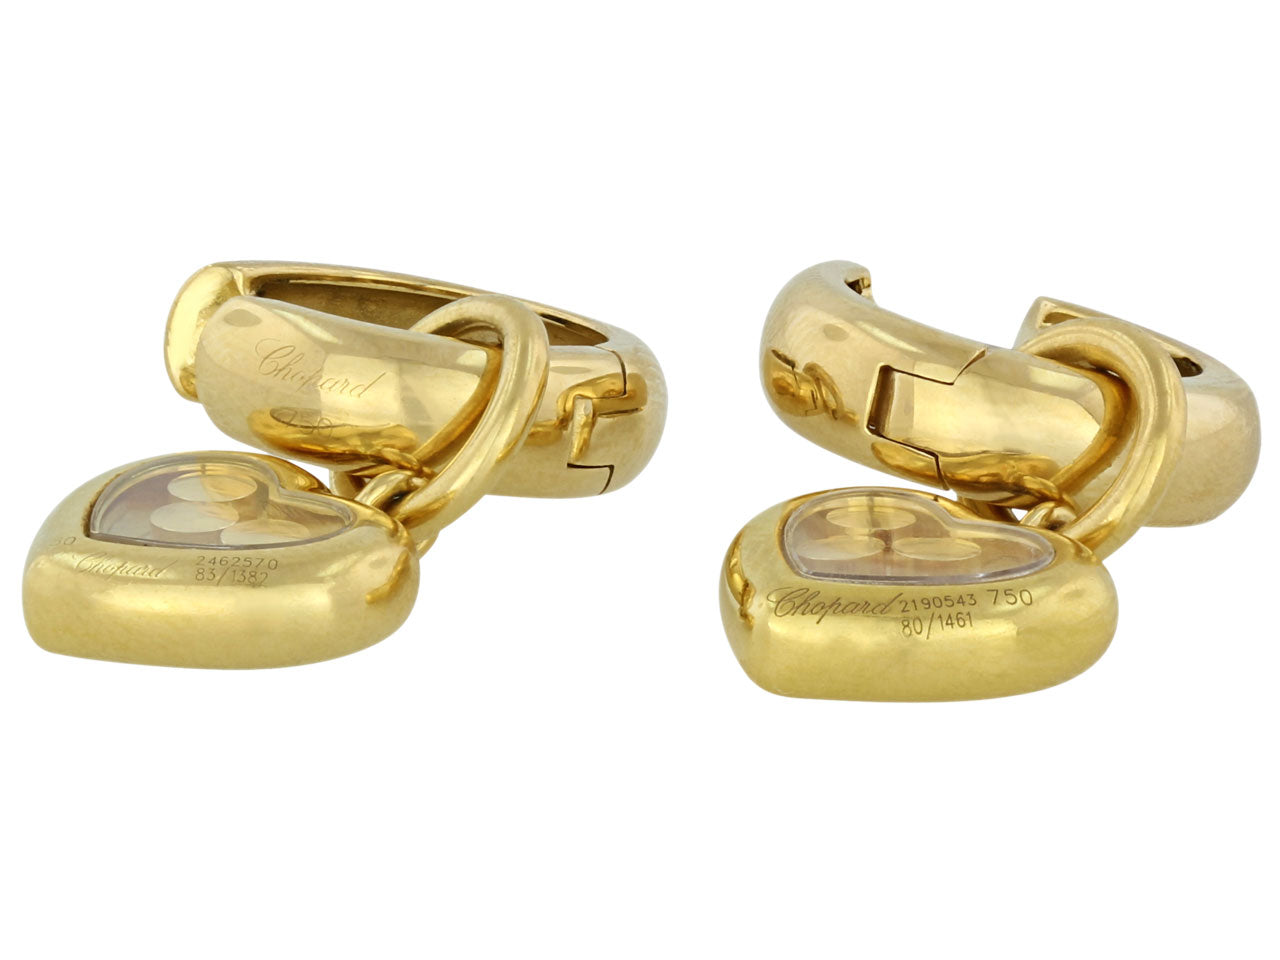 Chopard 'Happy Diamond' Heart Earrings in 18K